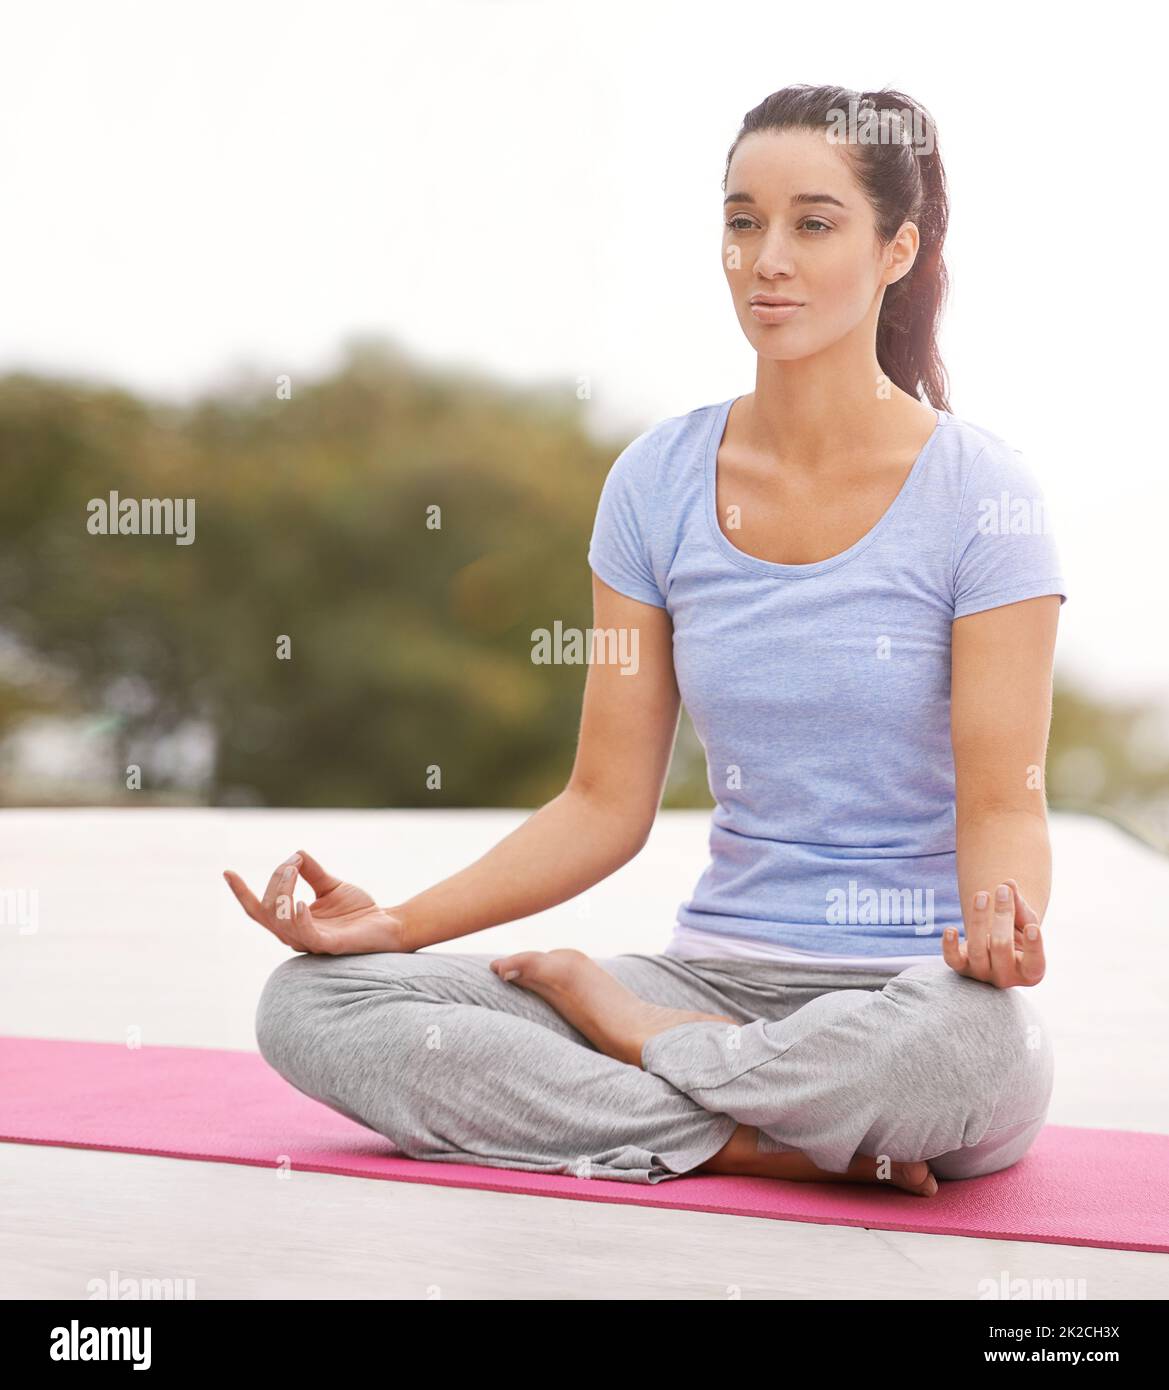 La position la plus facile jusqu'à présent. Prise de vue en longueur d'une jeune femme faisant du yoga à l'extérieur. Banque D'Images